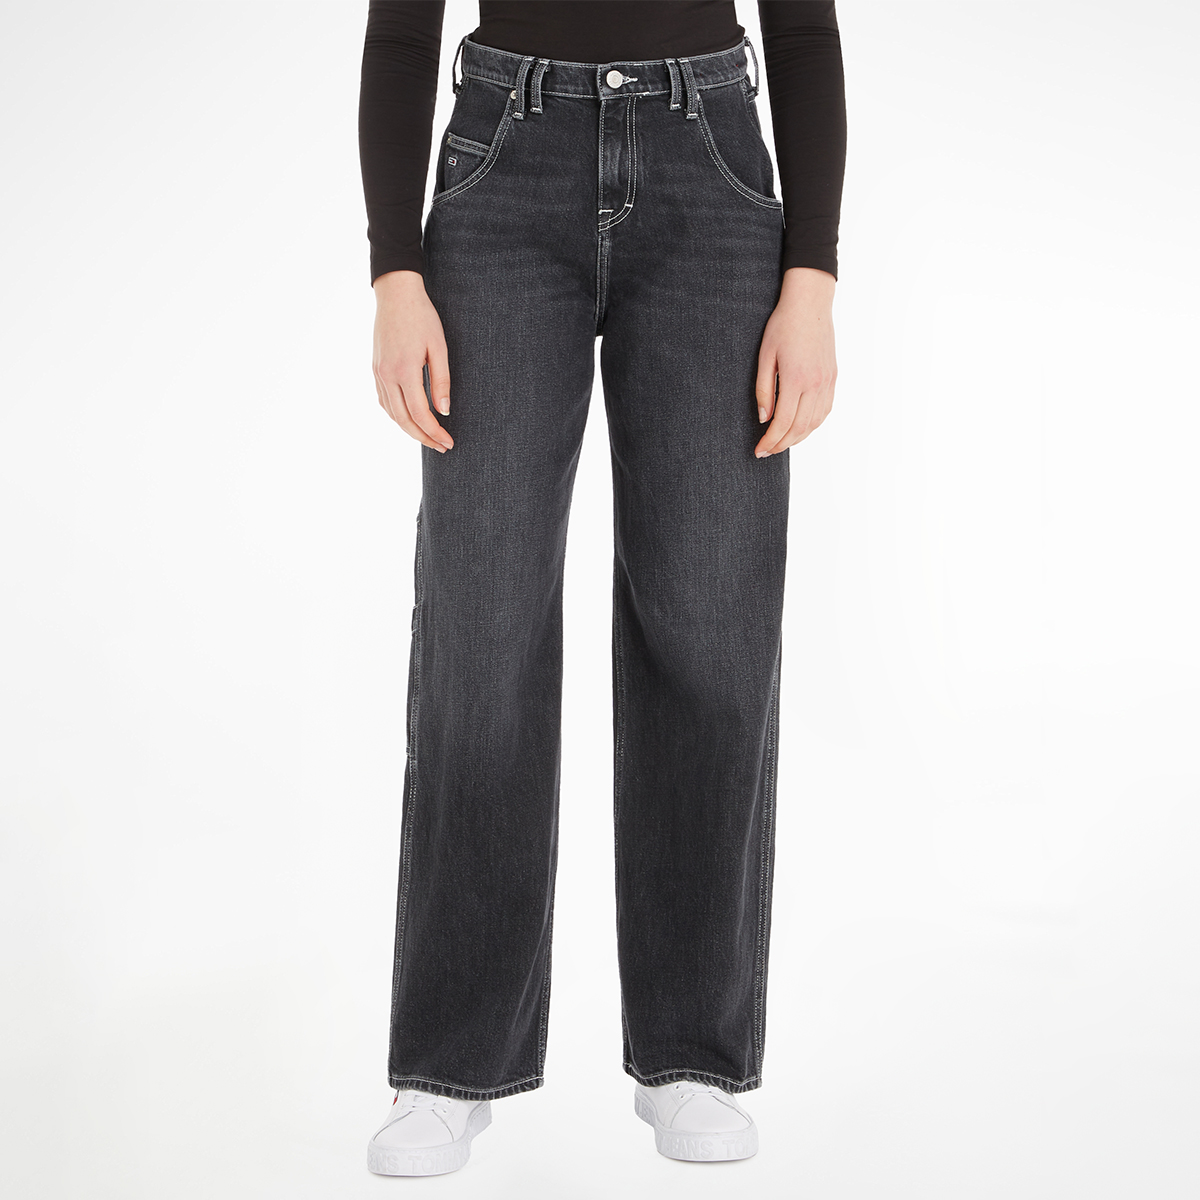 Buy Daisy Low Rise Baggy Jeans 30 - Black Online in Kuwait